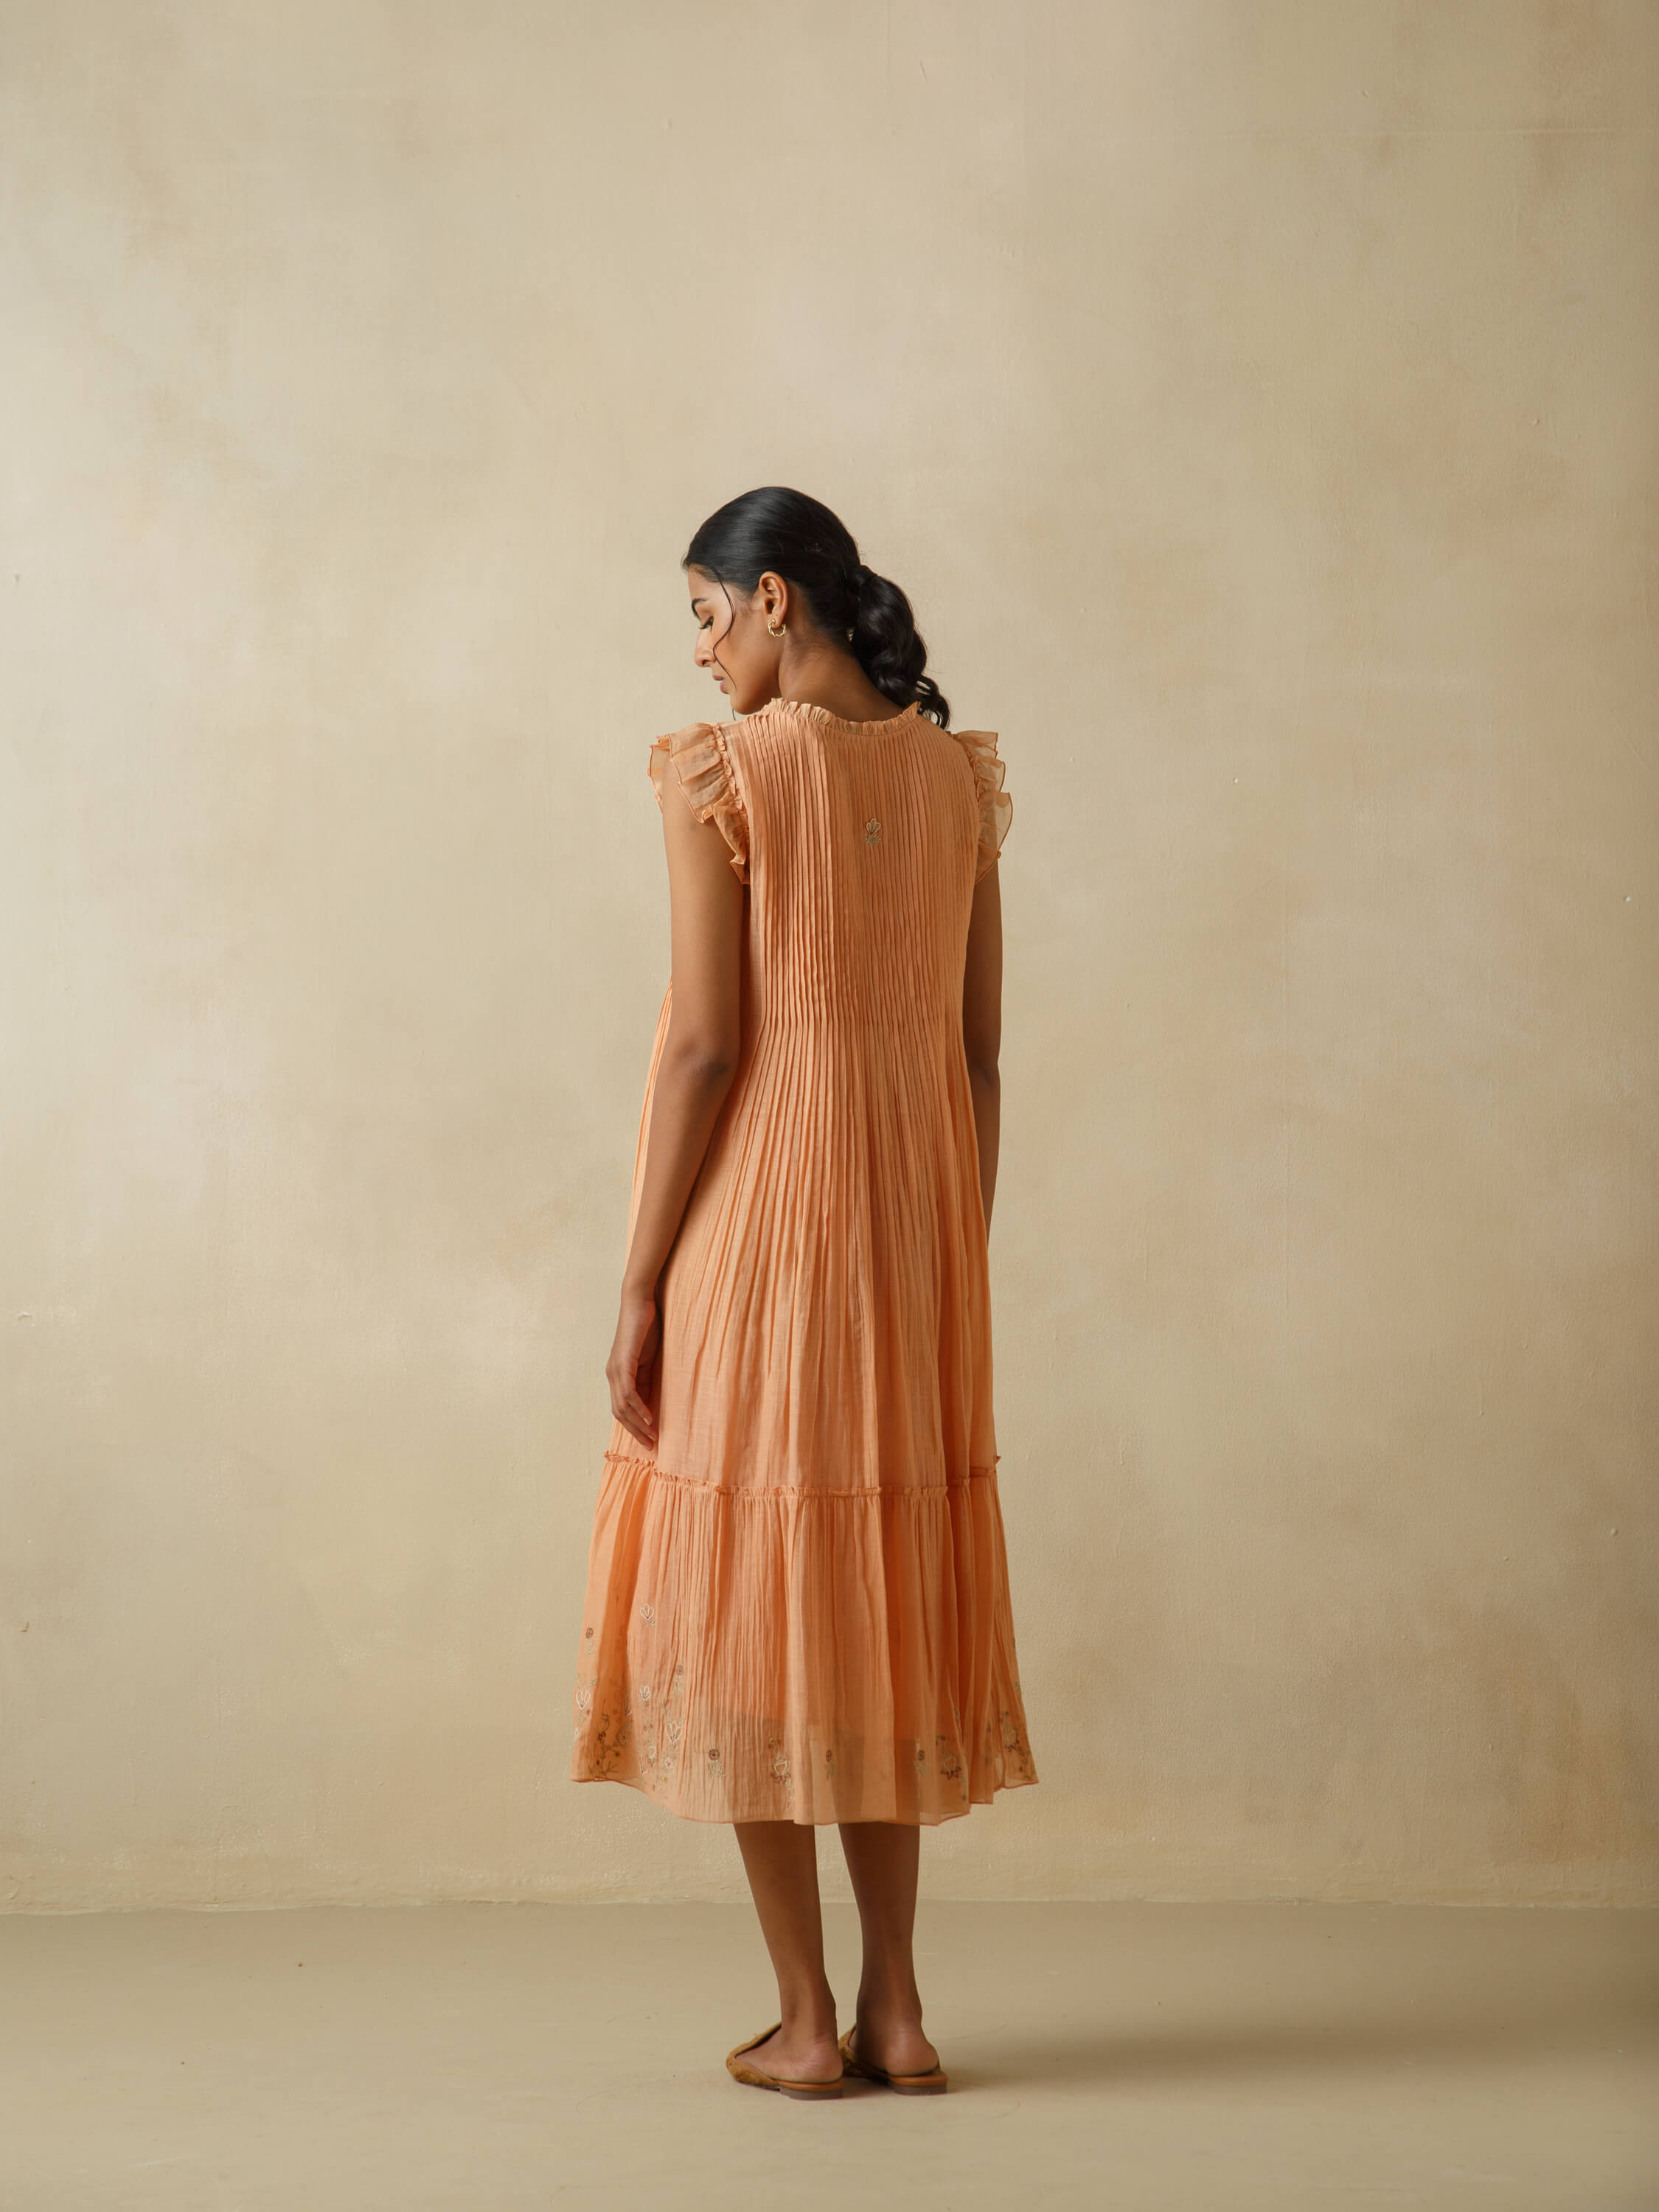 Tangerine Flutter Sleeves Dress - Image 3